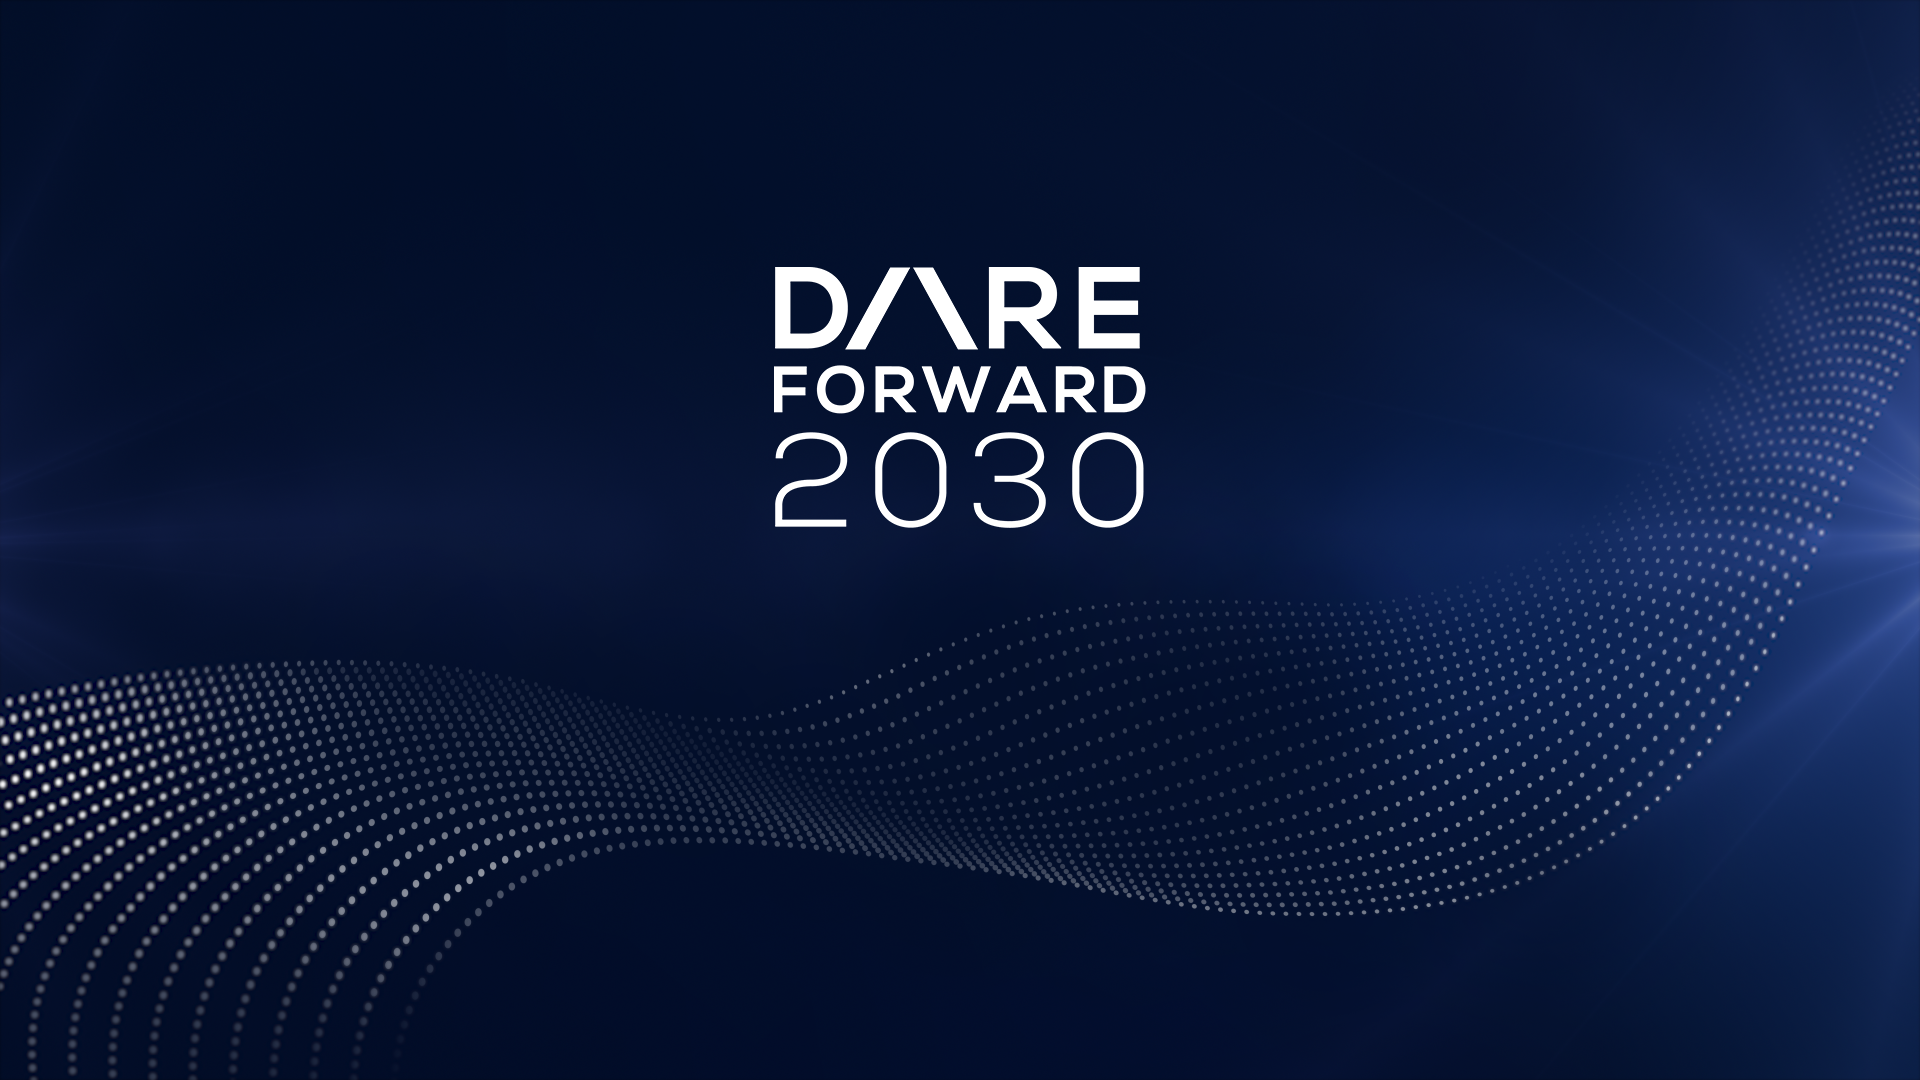 image de dare forward 2030